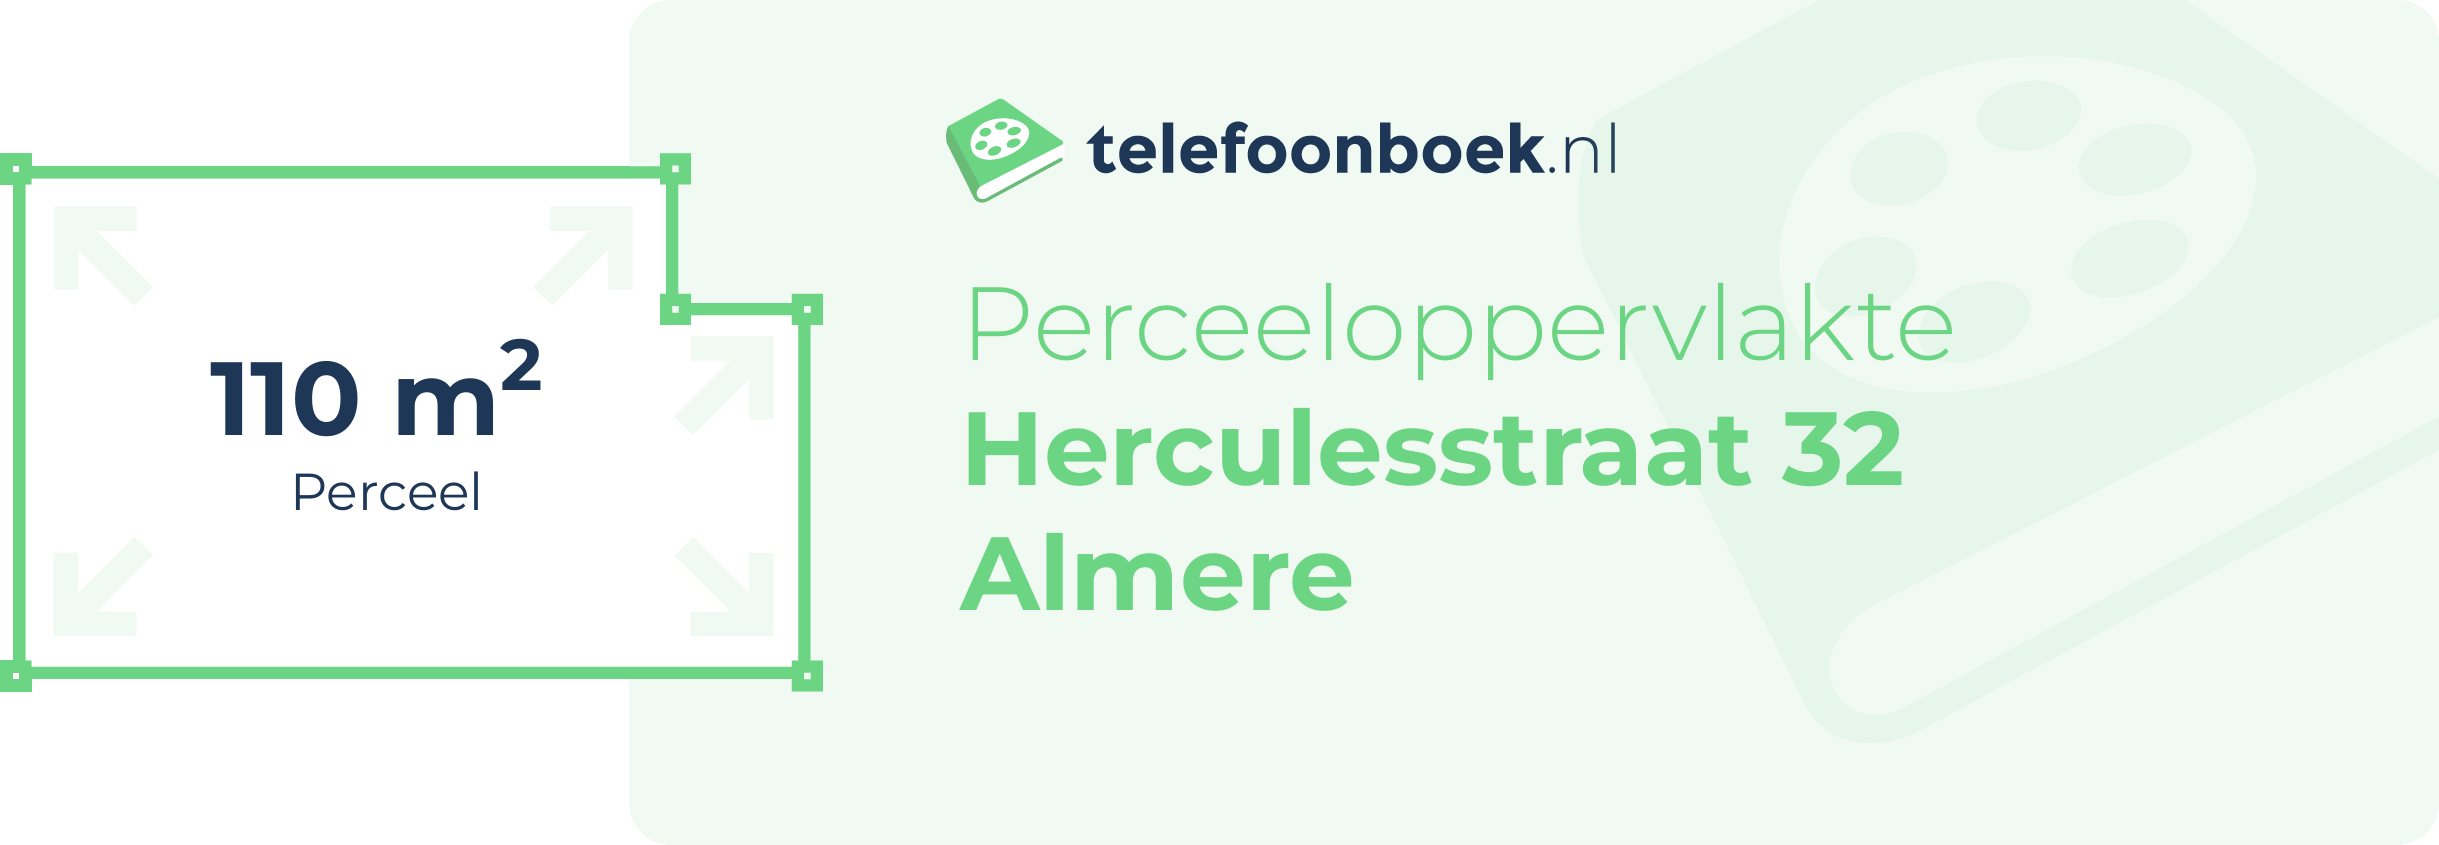 Perceeloppervlakte Herculesstraat 32 Almere